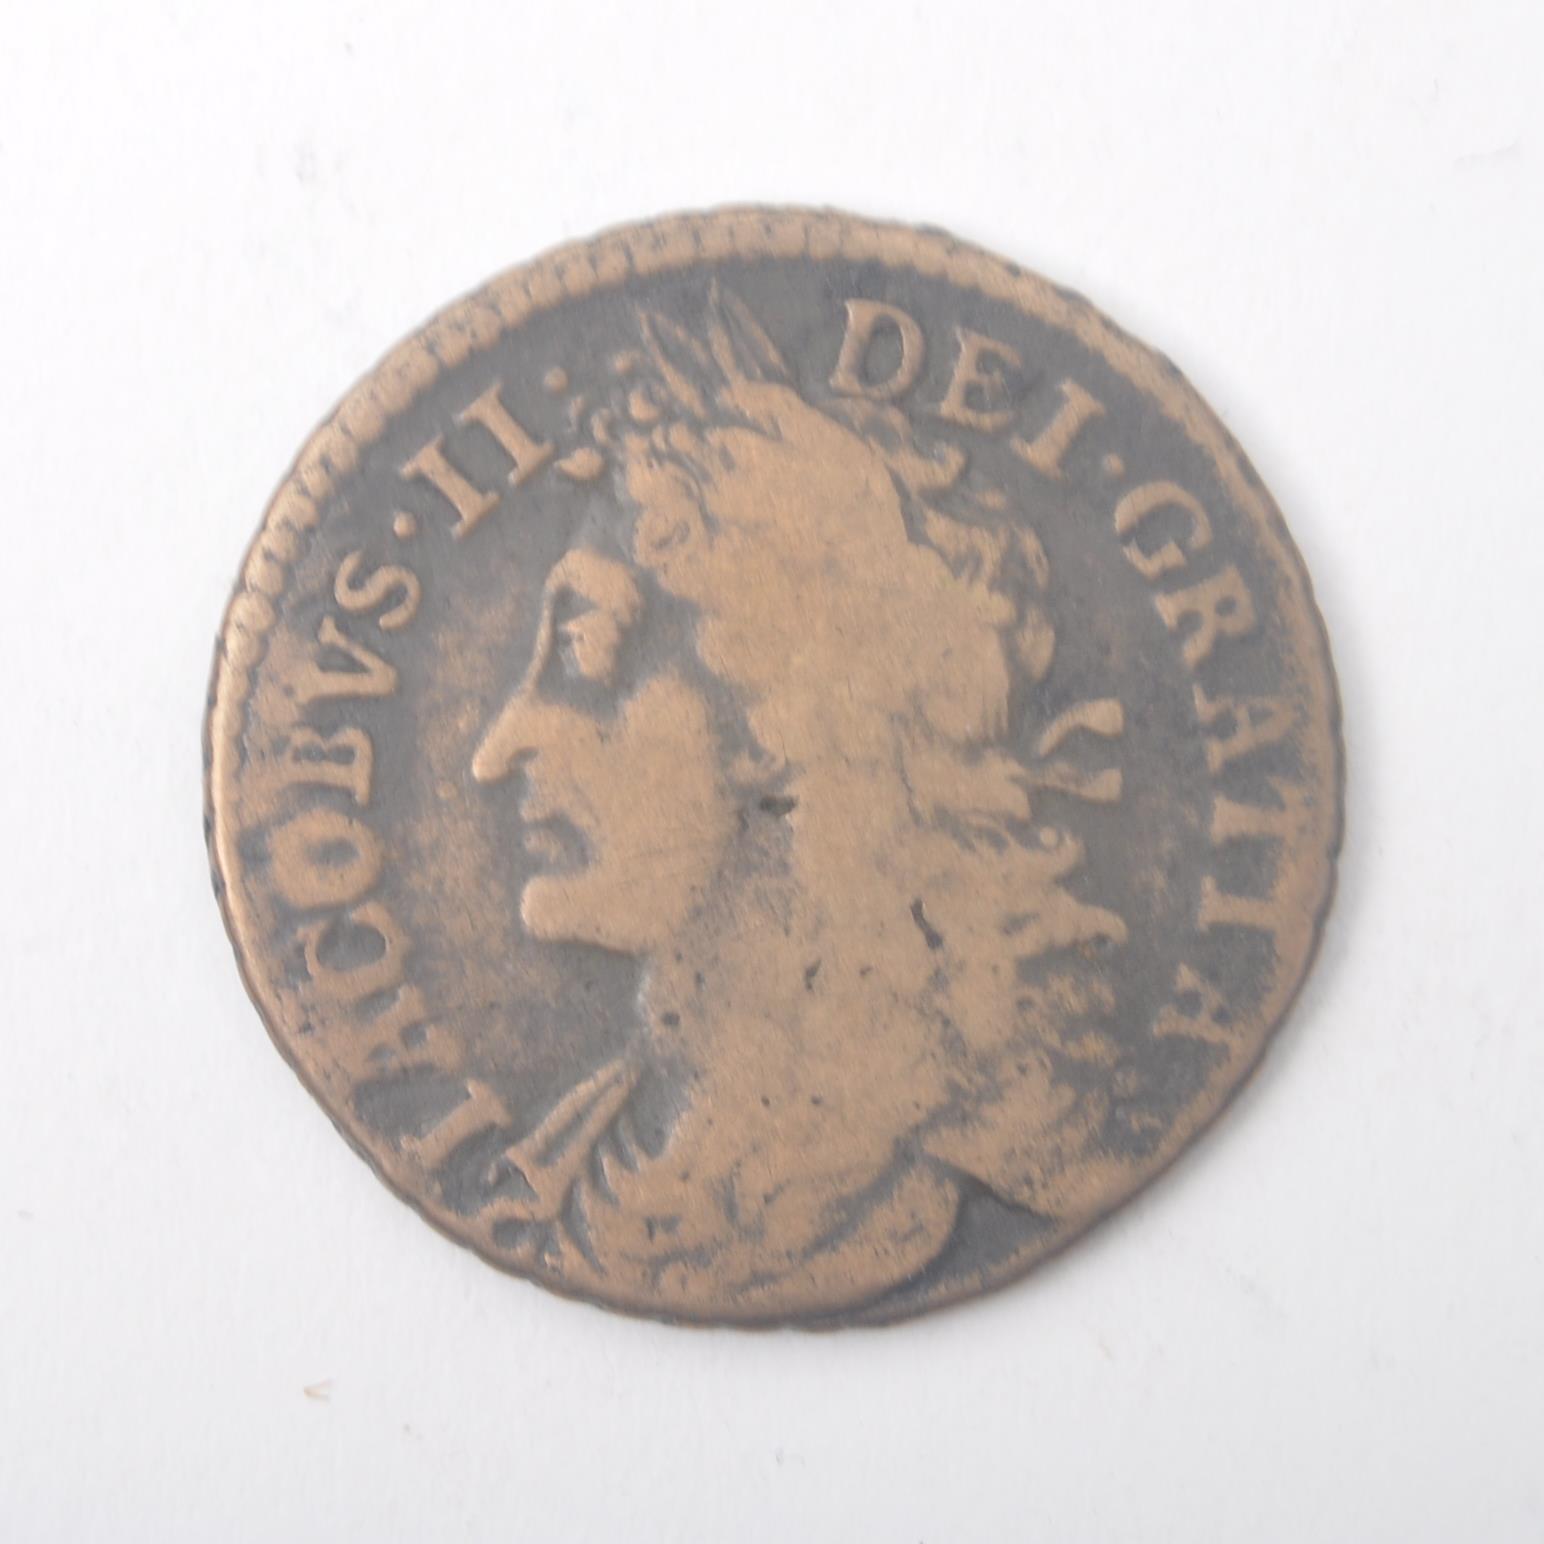 JAMES II 1689 GUN MONEY HALF CROWN COIN - Image 2 of 3